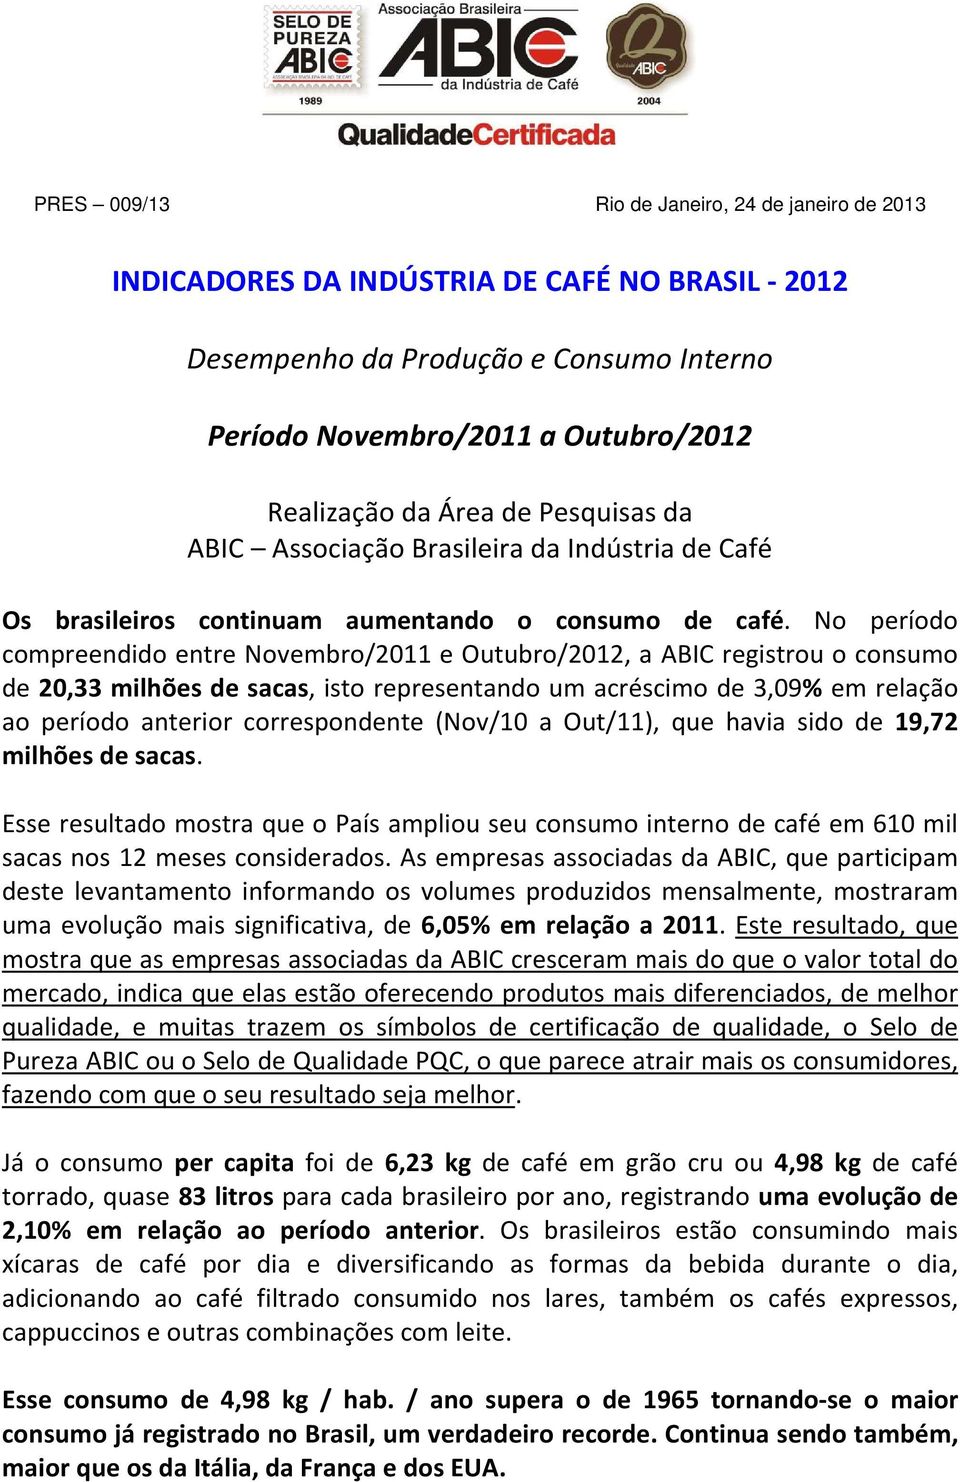 No período compreendido entre Novembro/2011 e Outubro/2012, a ABIC registrou o consumo de 20,33 milhões de sacas, isto representando um acréscimo de 3,09% em relação ao período anterior